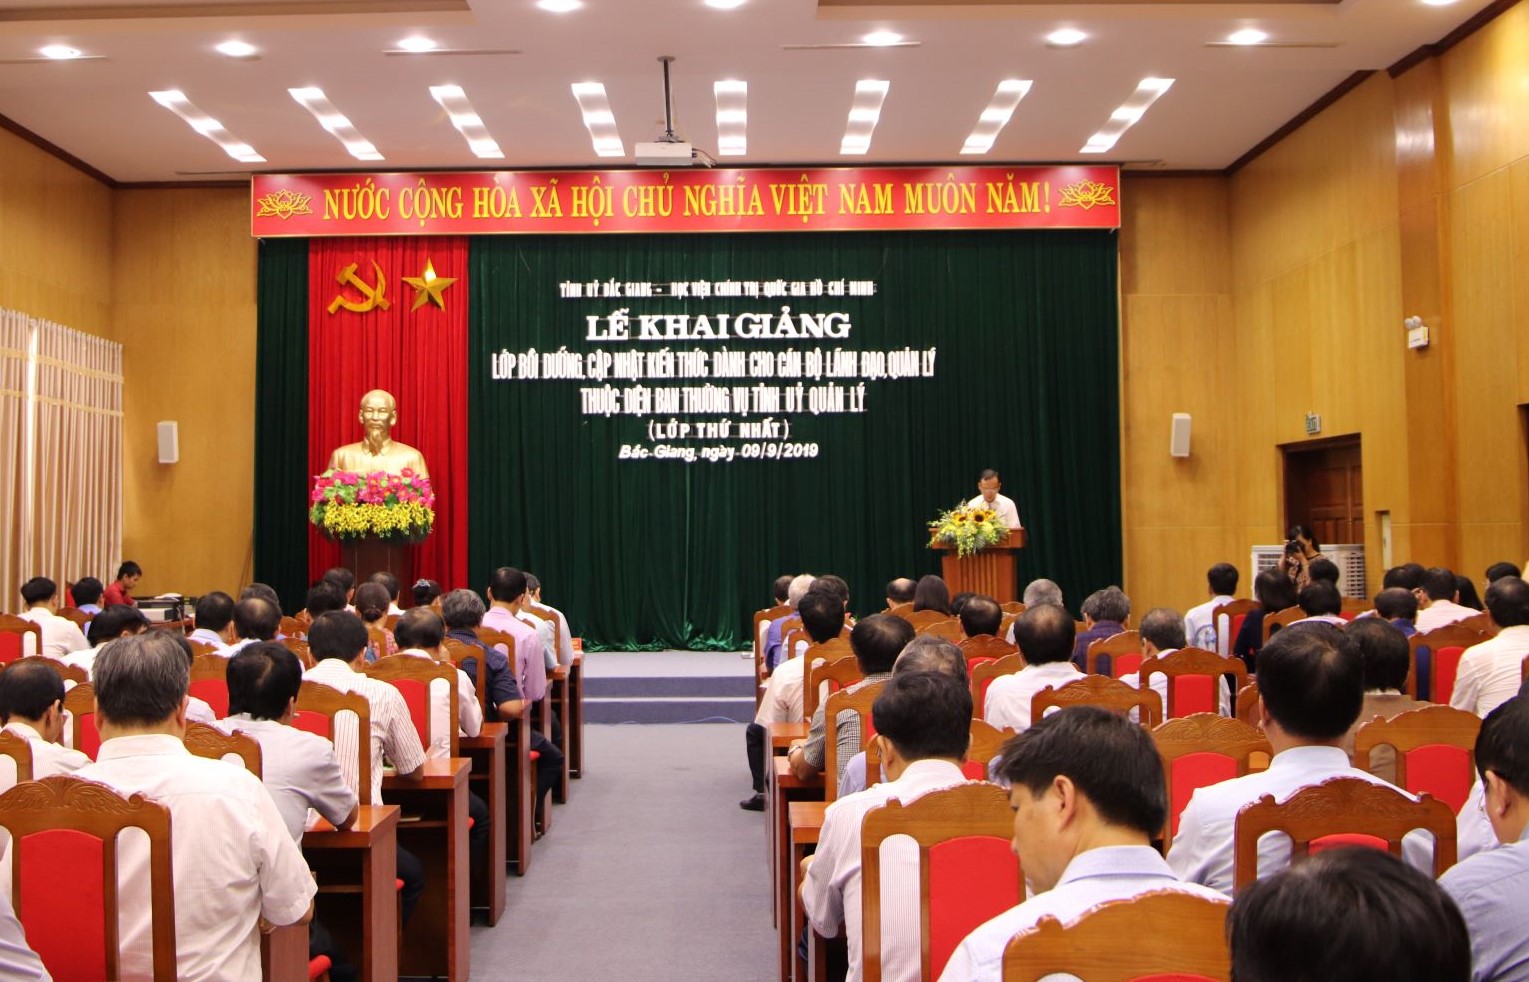 Đ/c Trần Văn Tuấn - TVU, Hiệu trưởng Trường Chính trị tỉnh